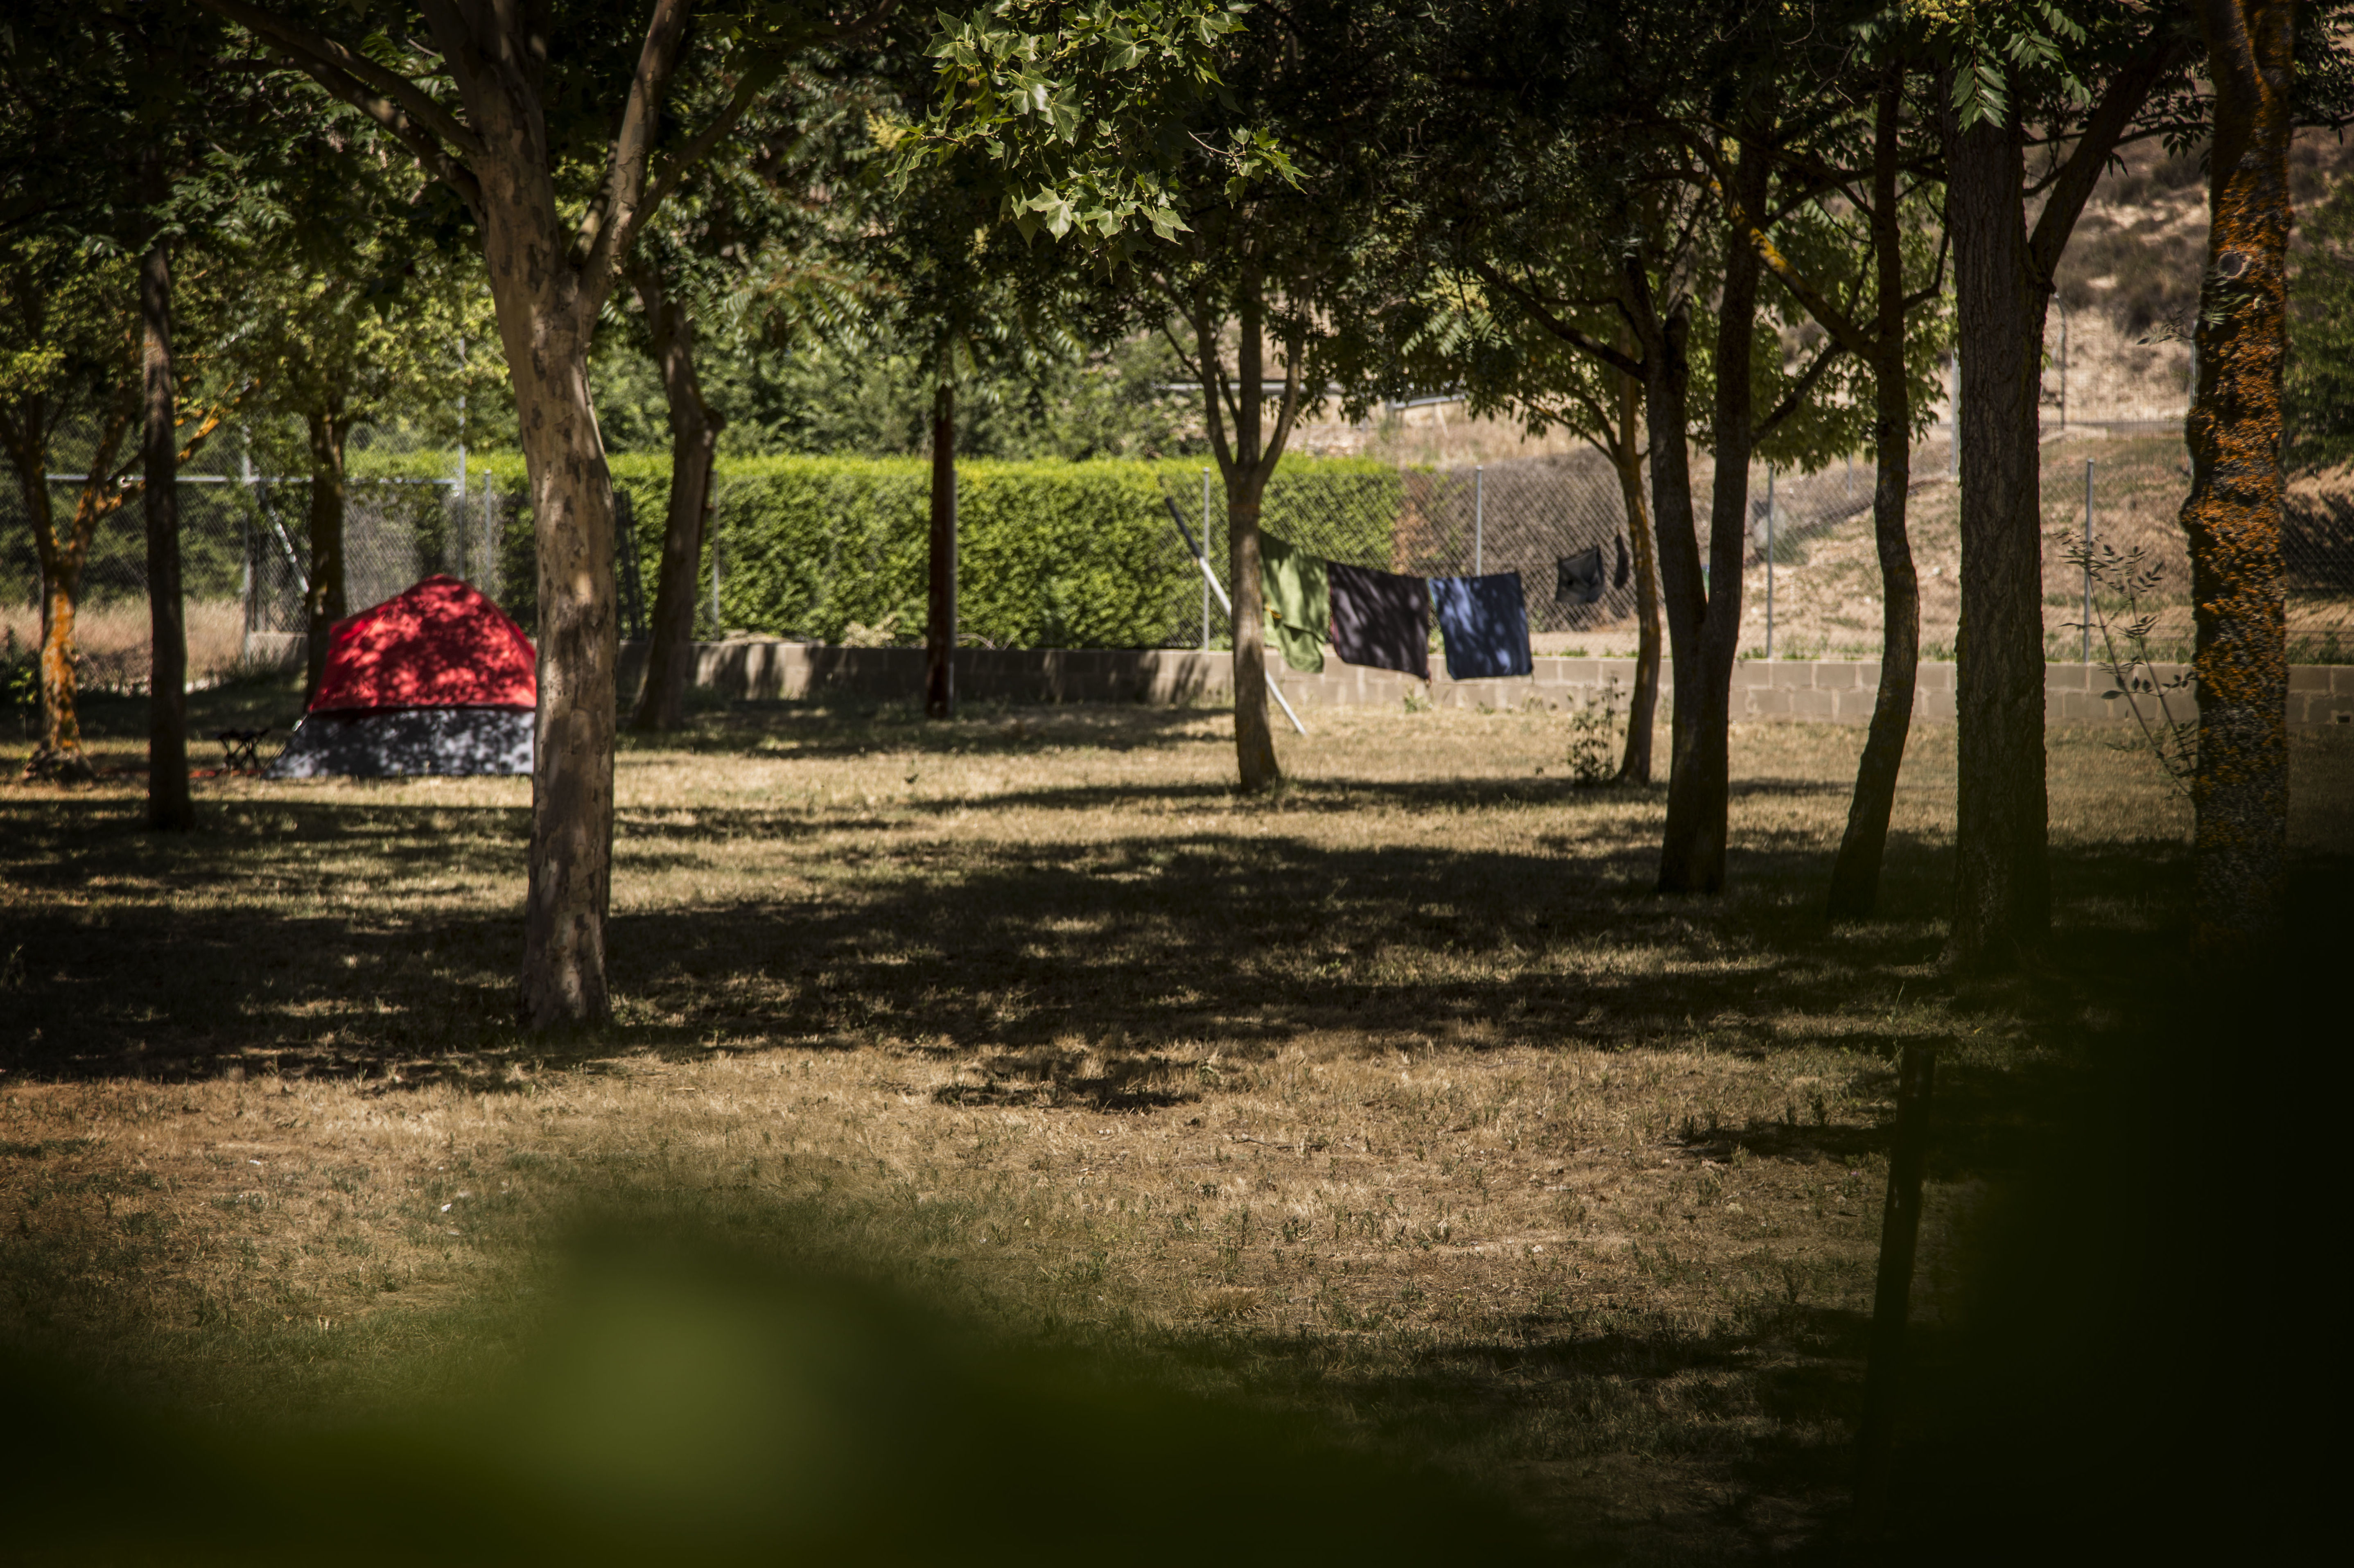 Foto 4 de Camping en Cabrerizos | Camping Don Quijote